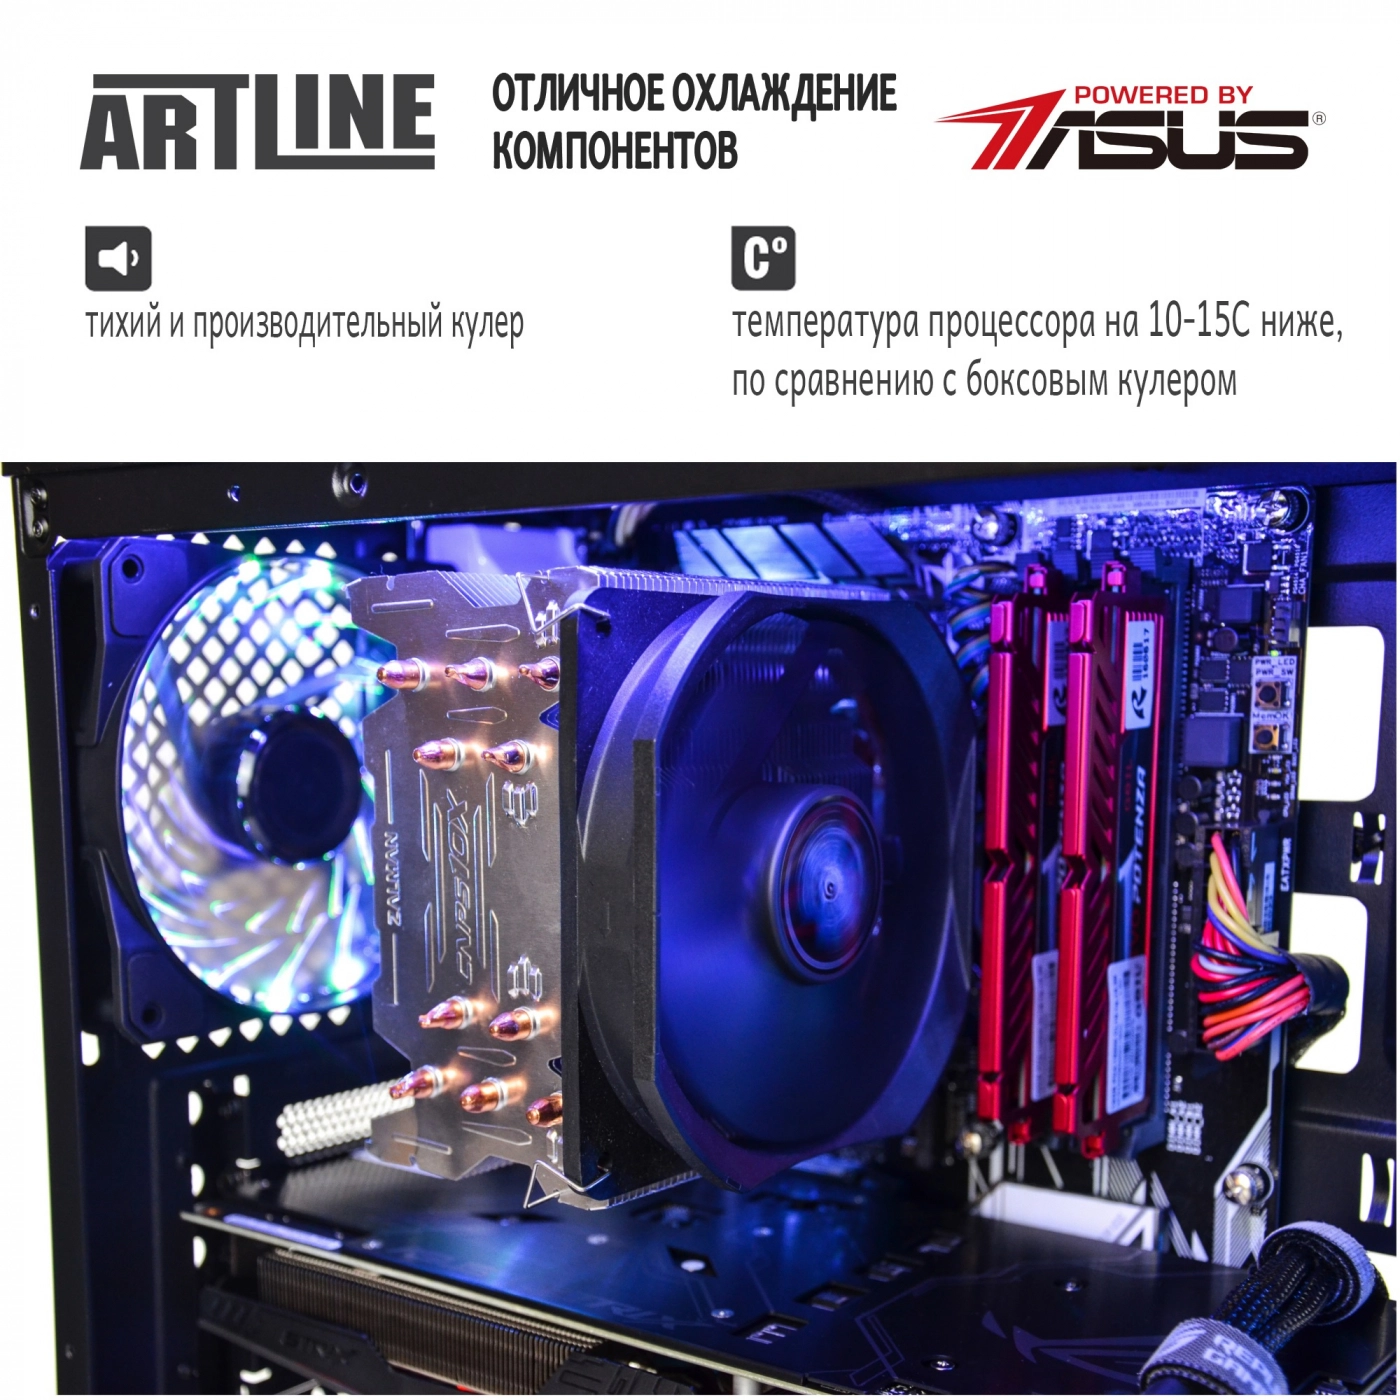 Купить Компьютер ARTLINE Gaming X93v49 - фото 4